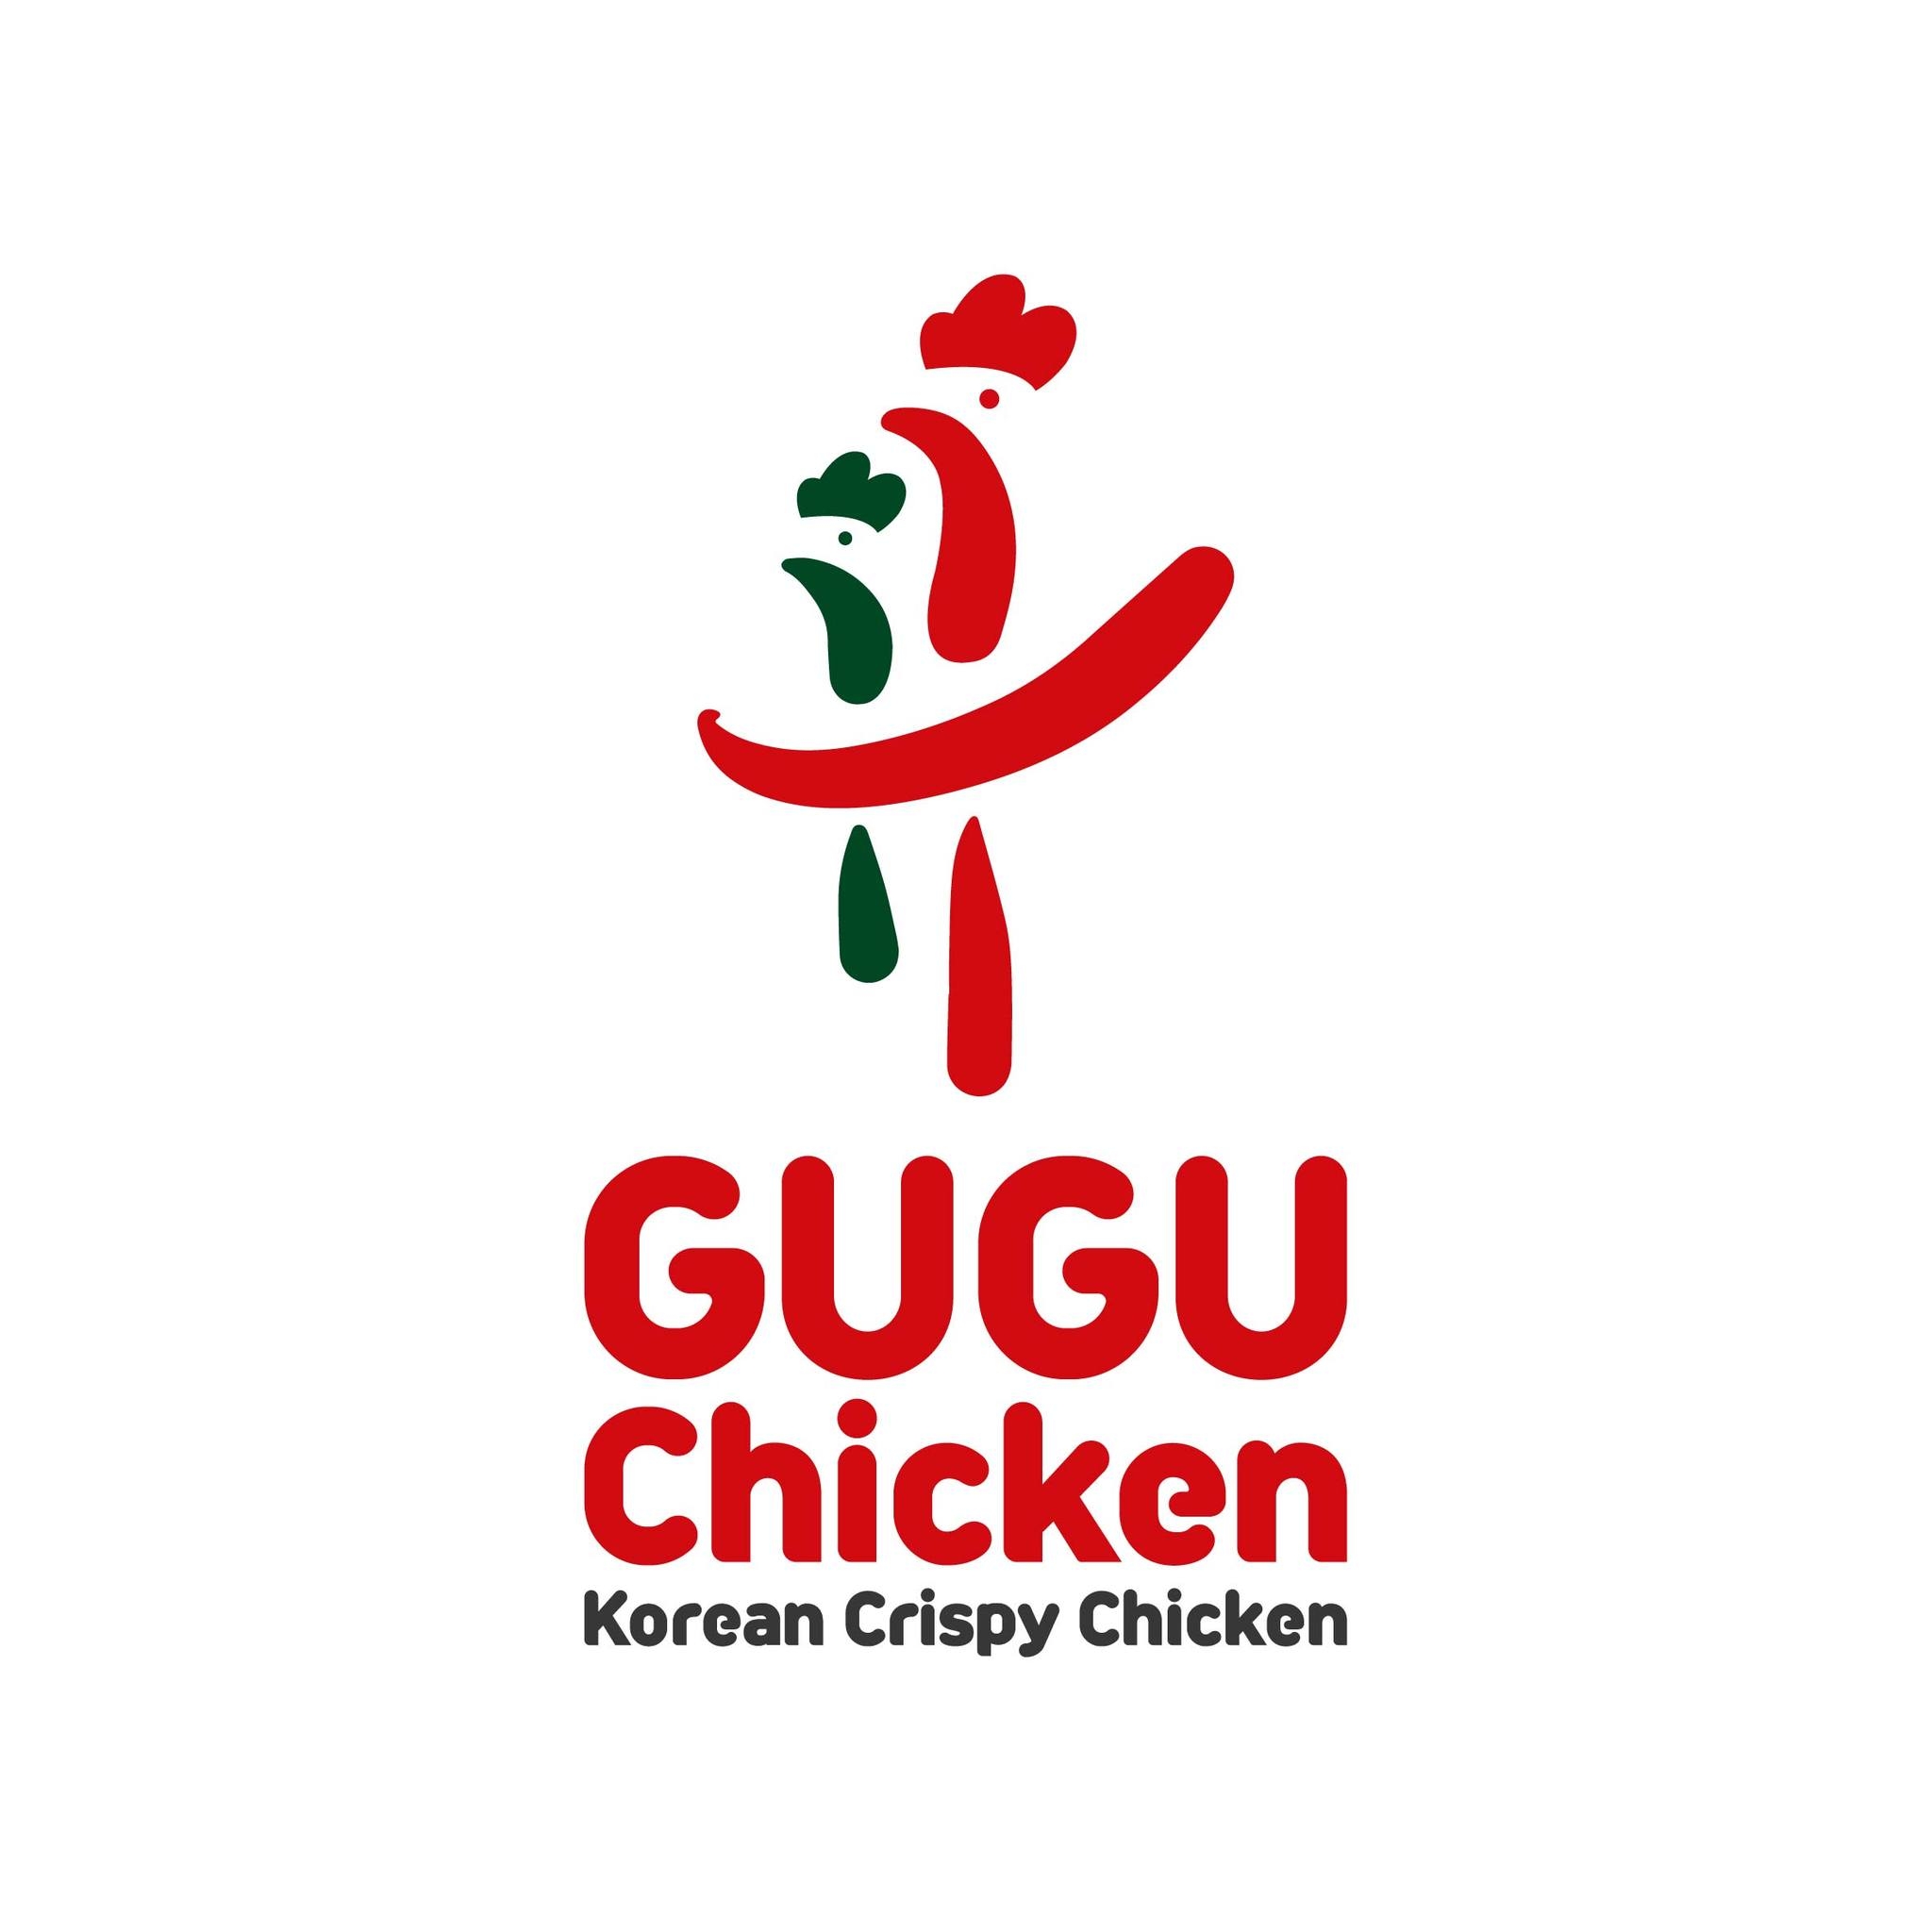 GUGU Chicken Korean Crispy Chicken